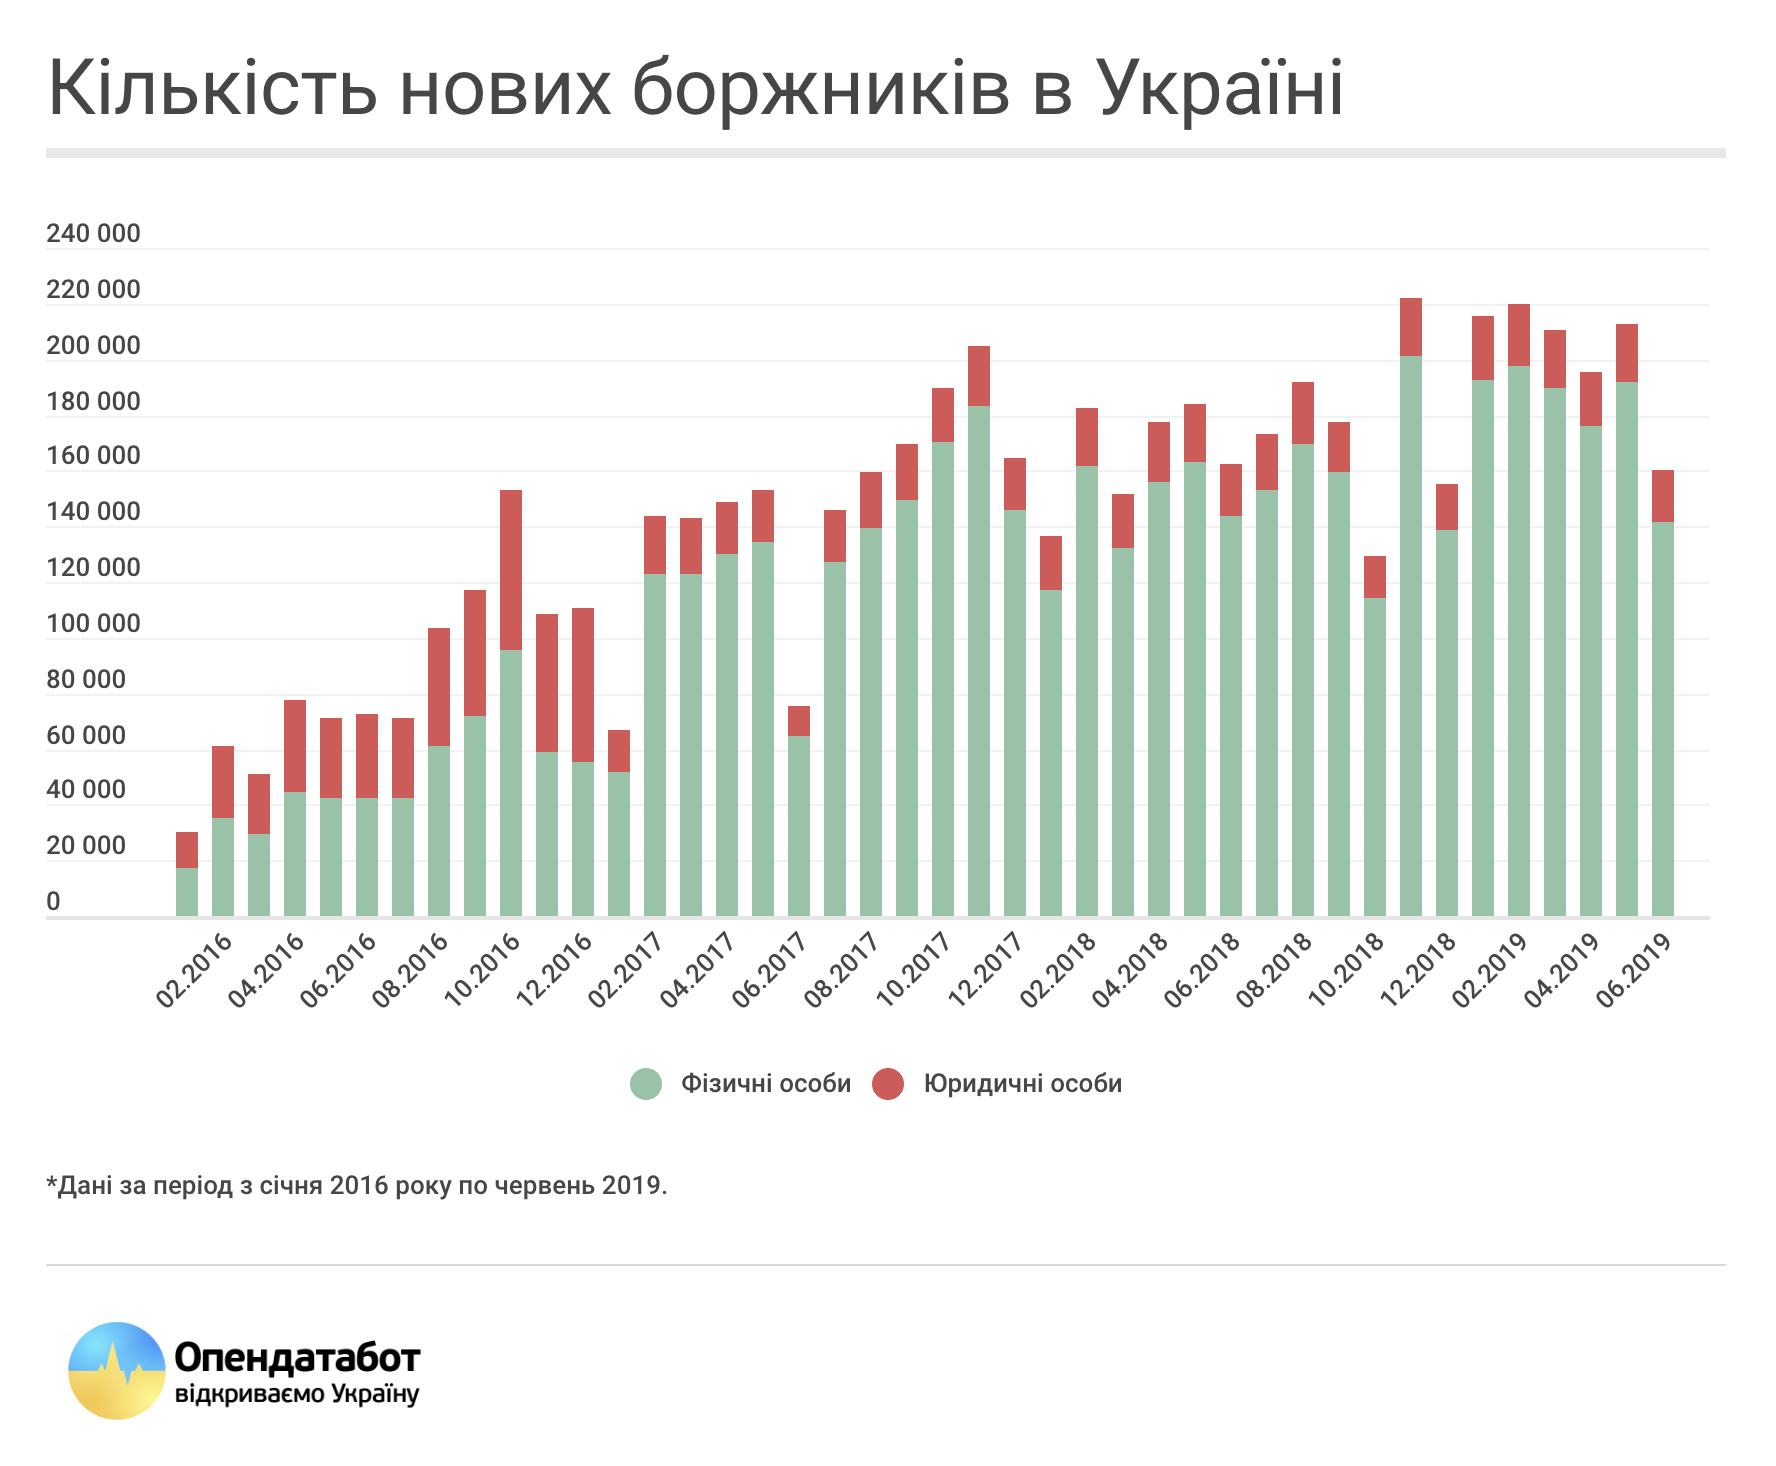 Реестр должников пополнился 1 млн украинцев. Что им грозит